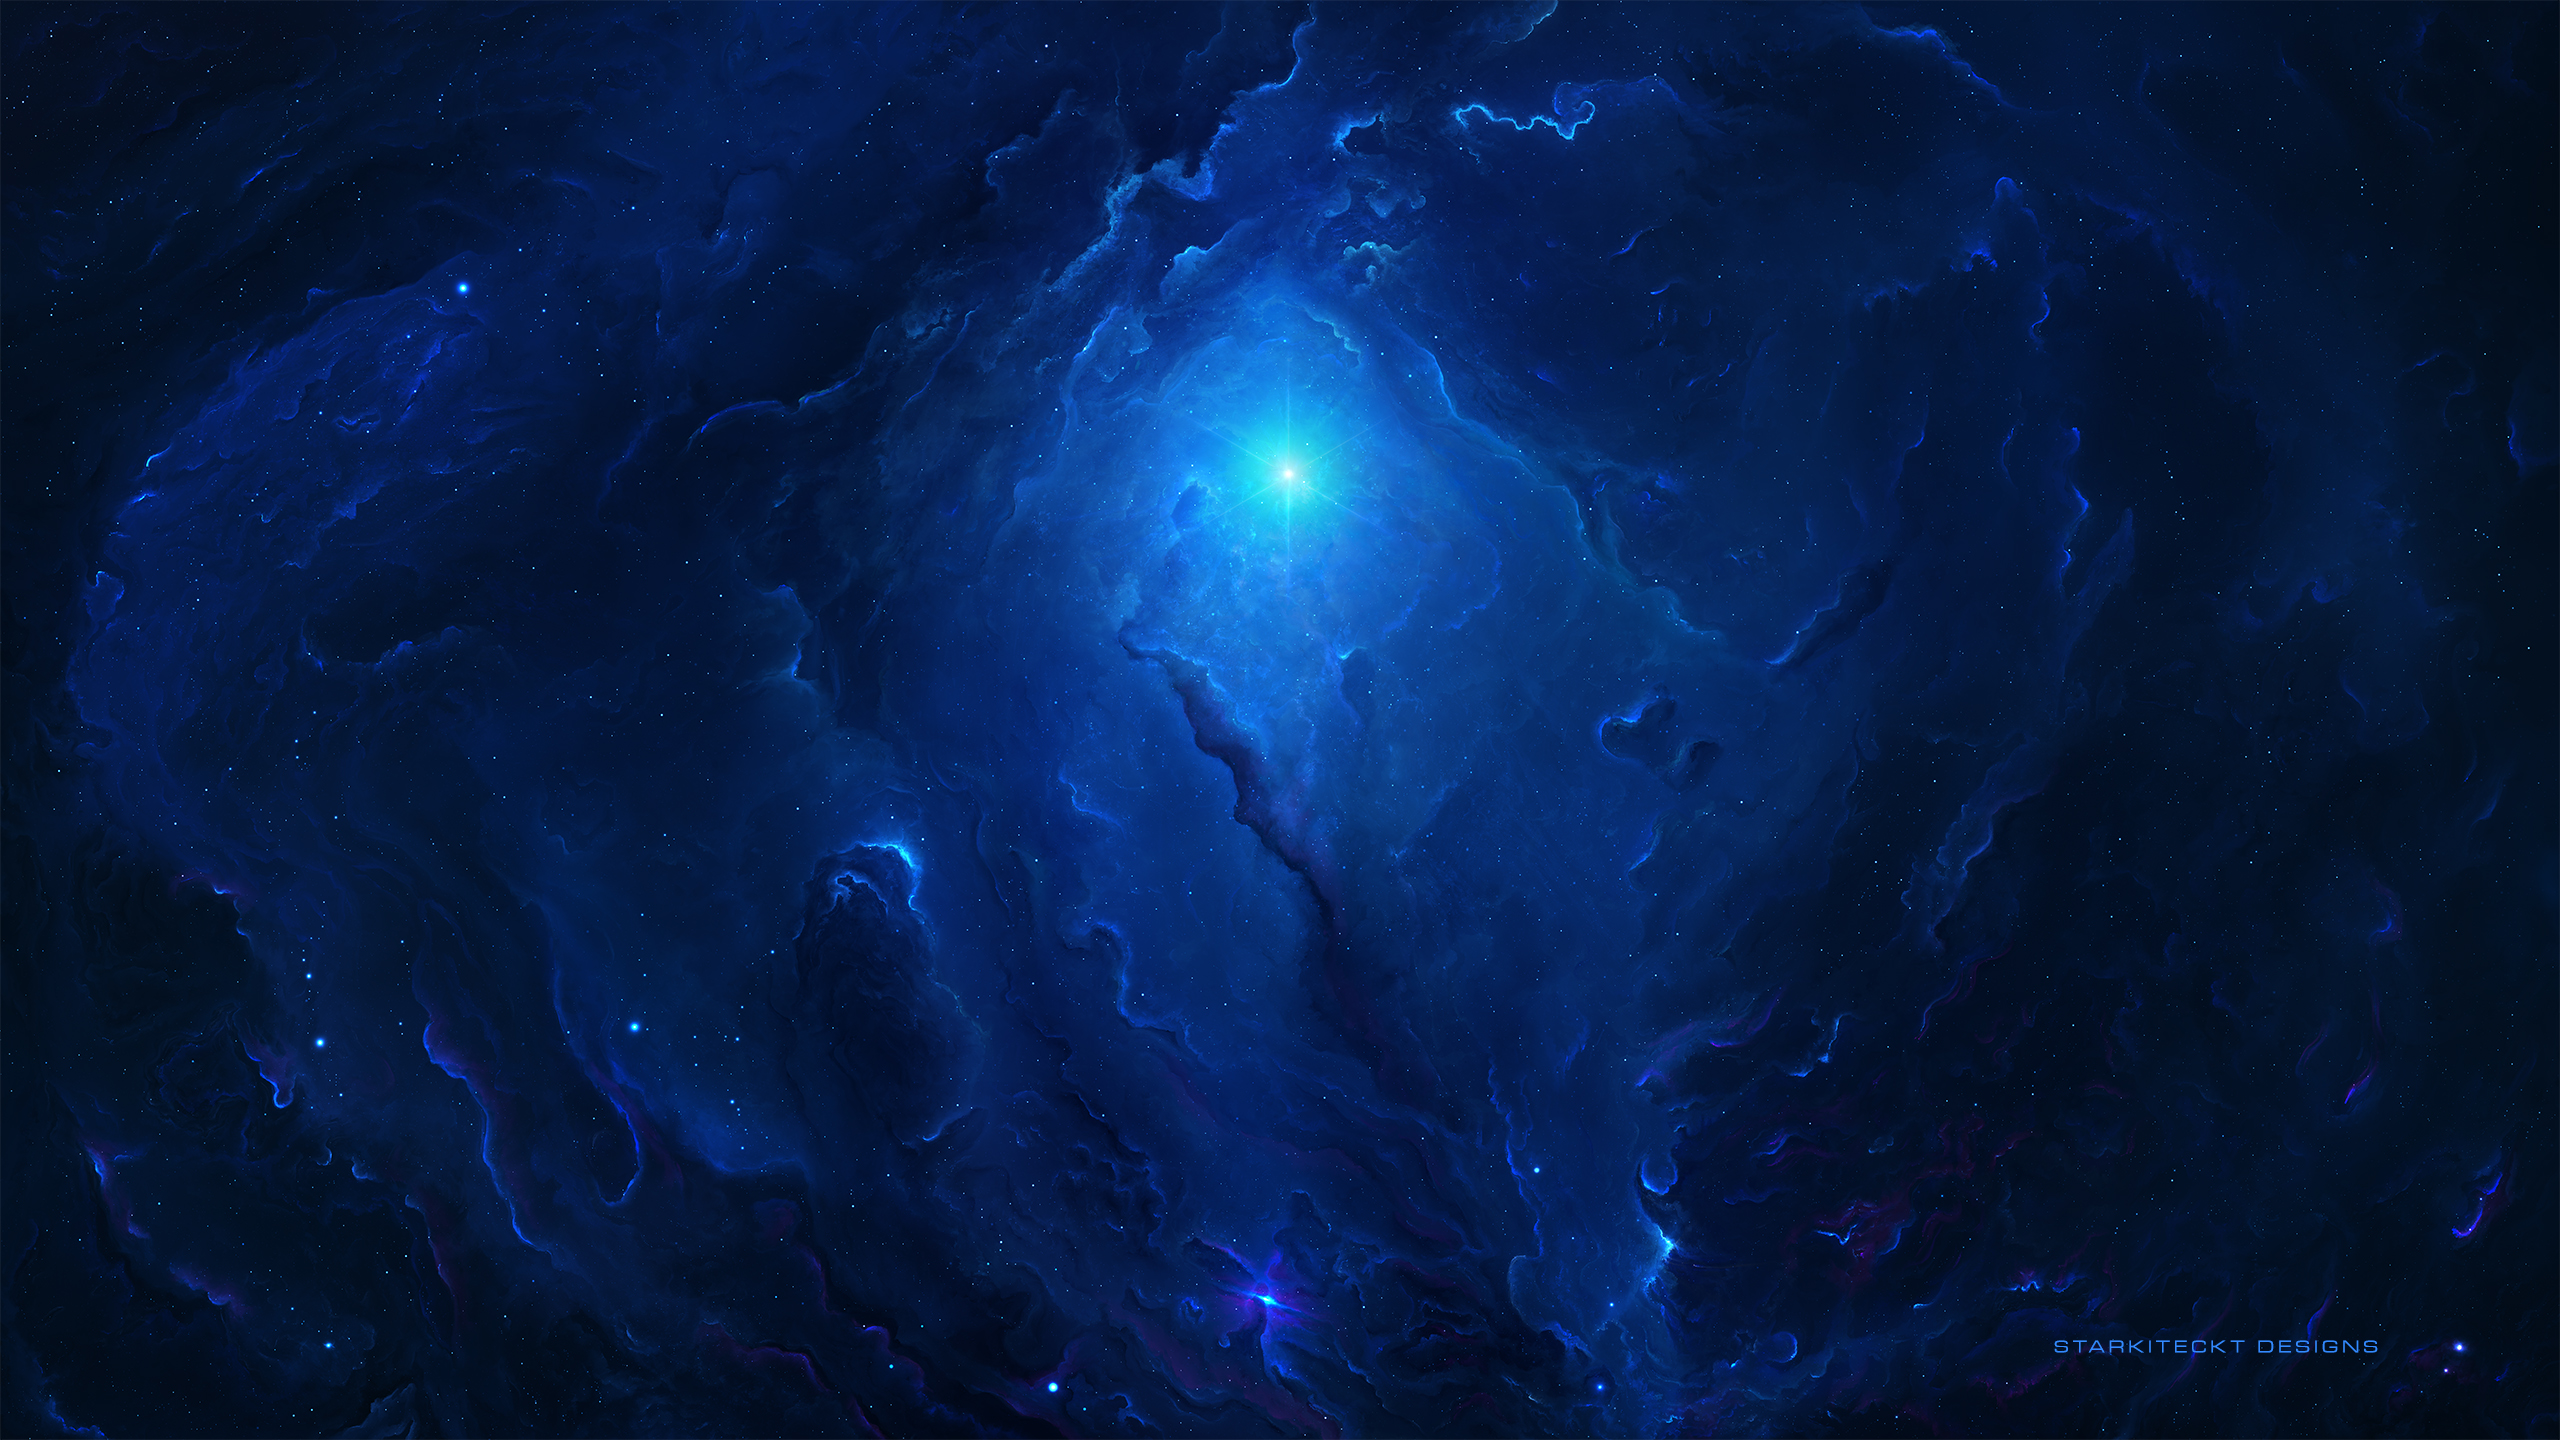 General 2560x1440 Starkiteckt 3D space galaxy blue space art digital art